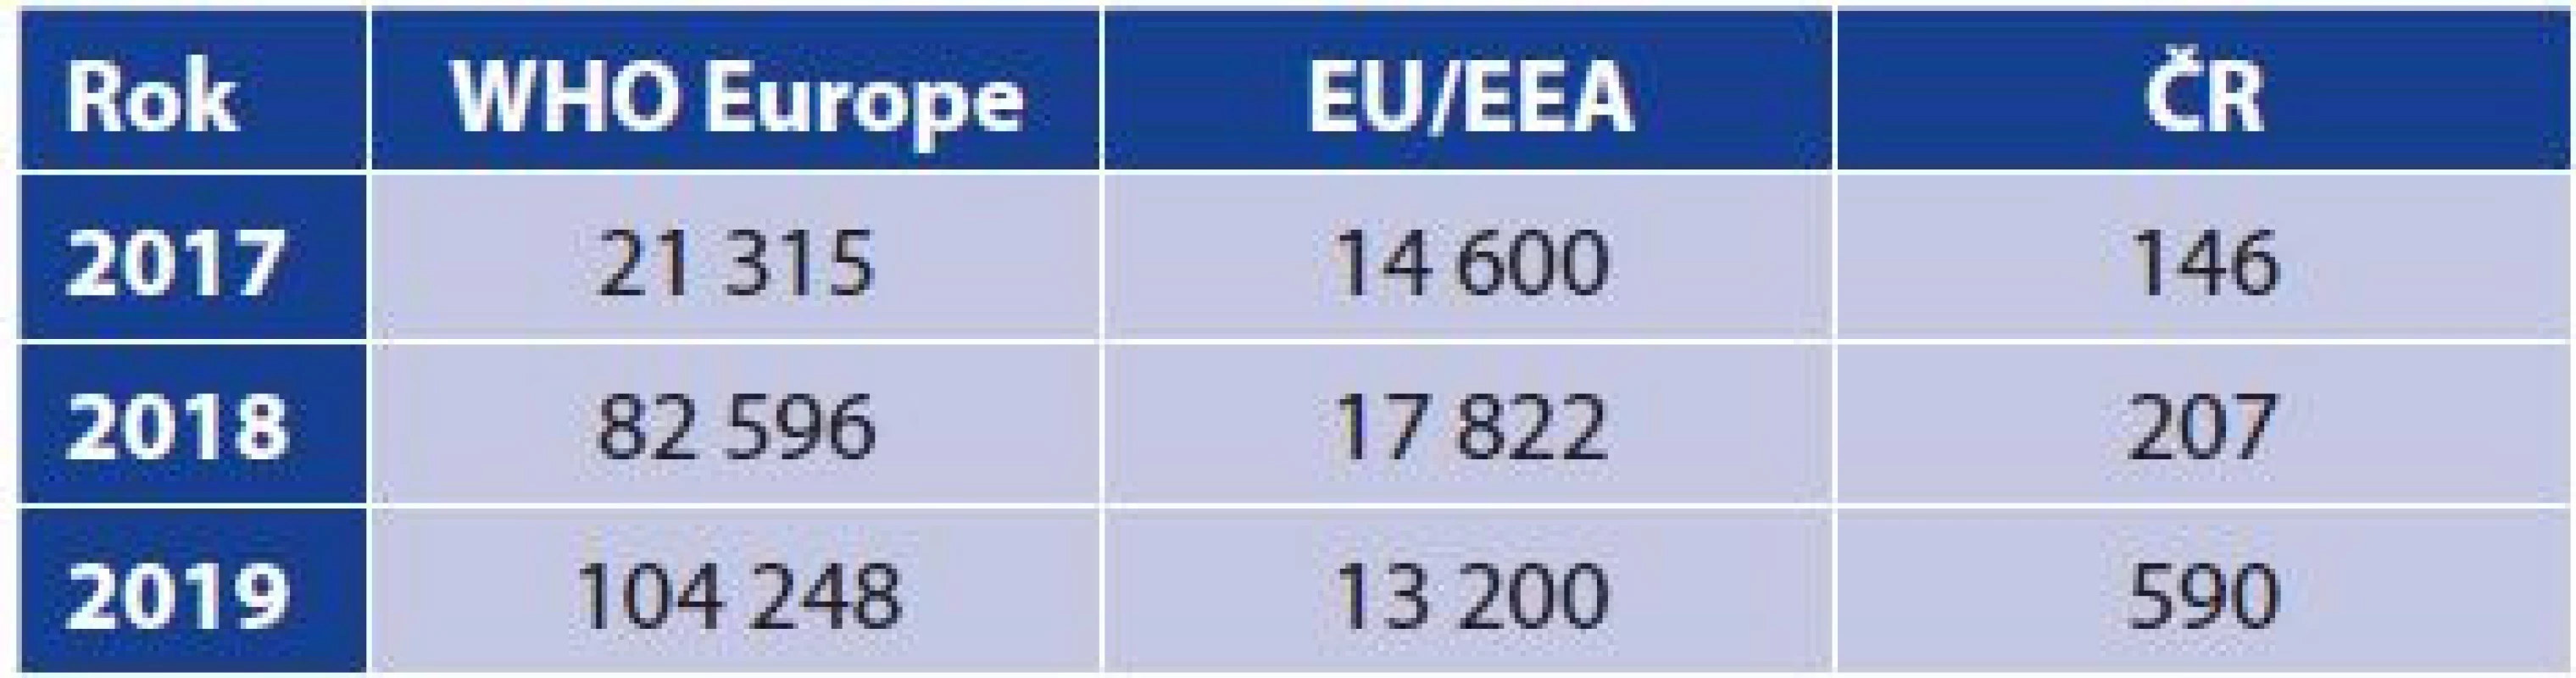 Počet hlášených případů onemocnění spalničkami
(abs.)<br>
Table 1. Reported measles cases (absolute numbers)